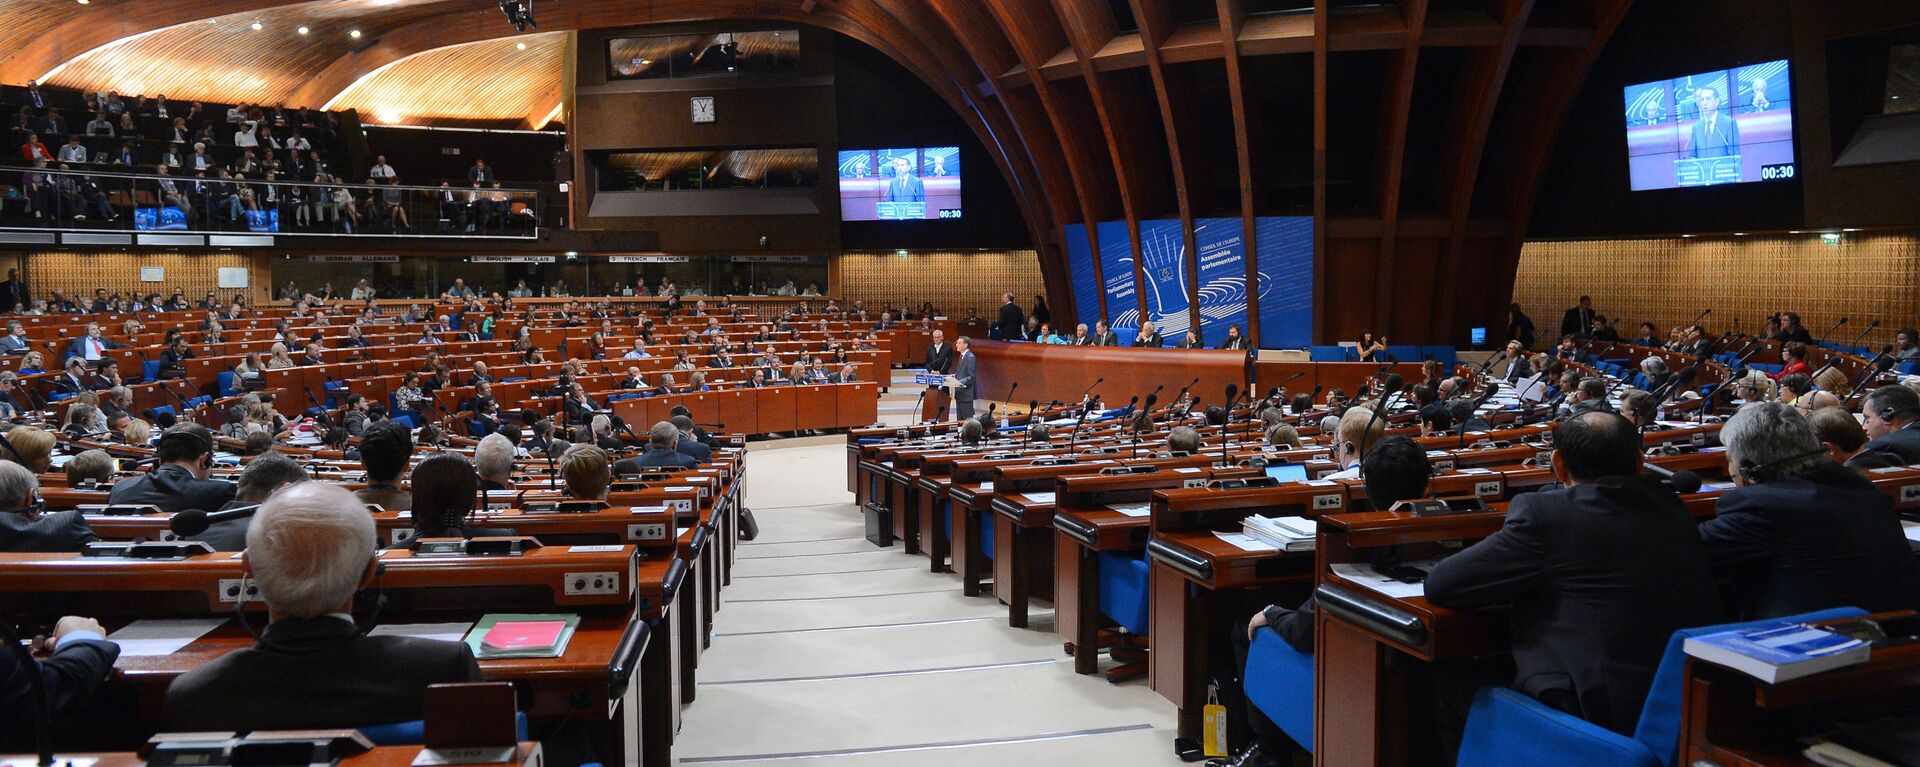 Пленарное заседание зимней сессии Парламентской ассамблеи Совета Европы - Sputnik Армения, 1920, 20.04.2021